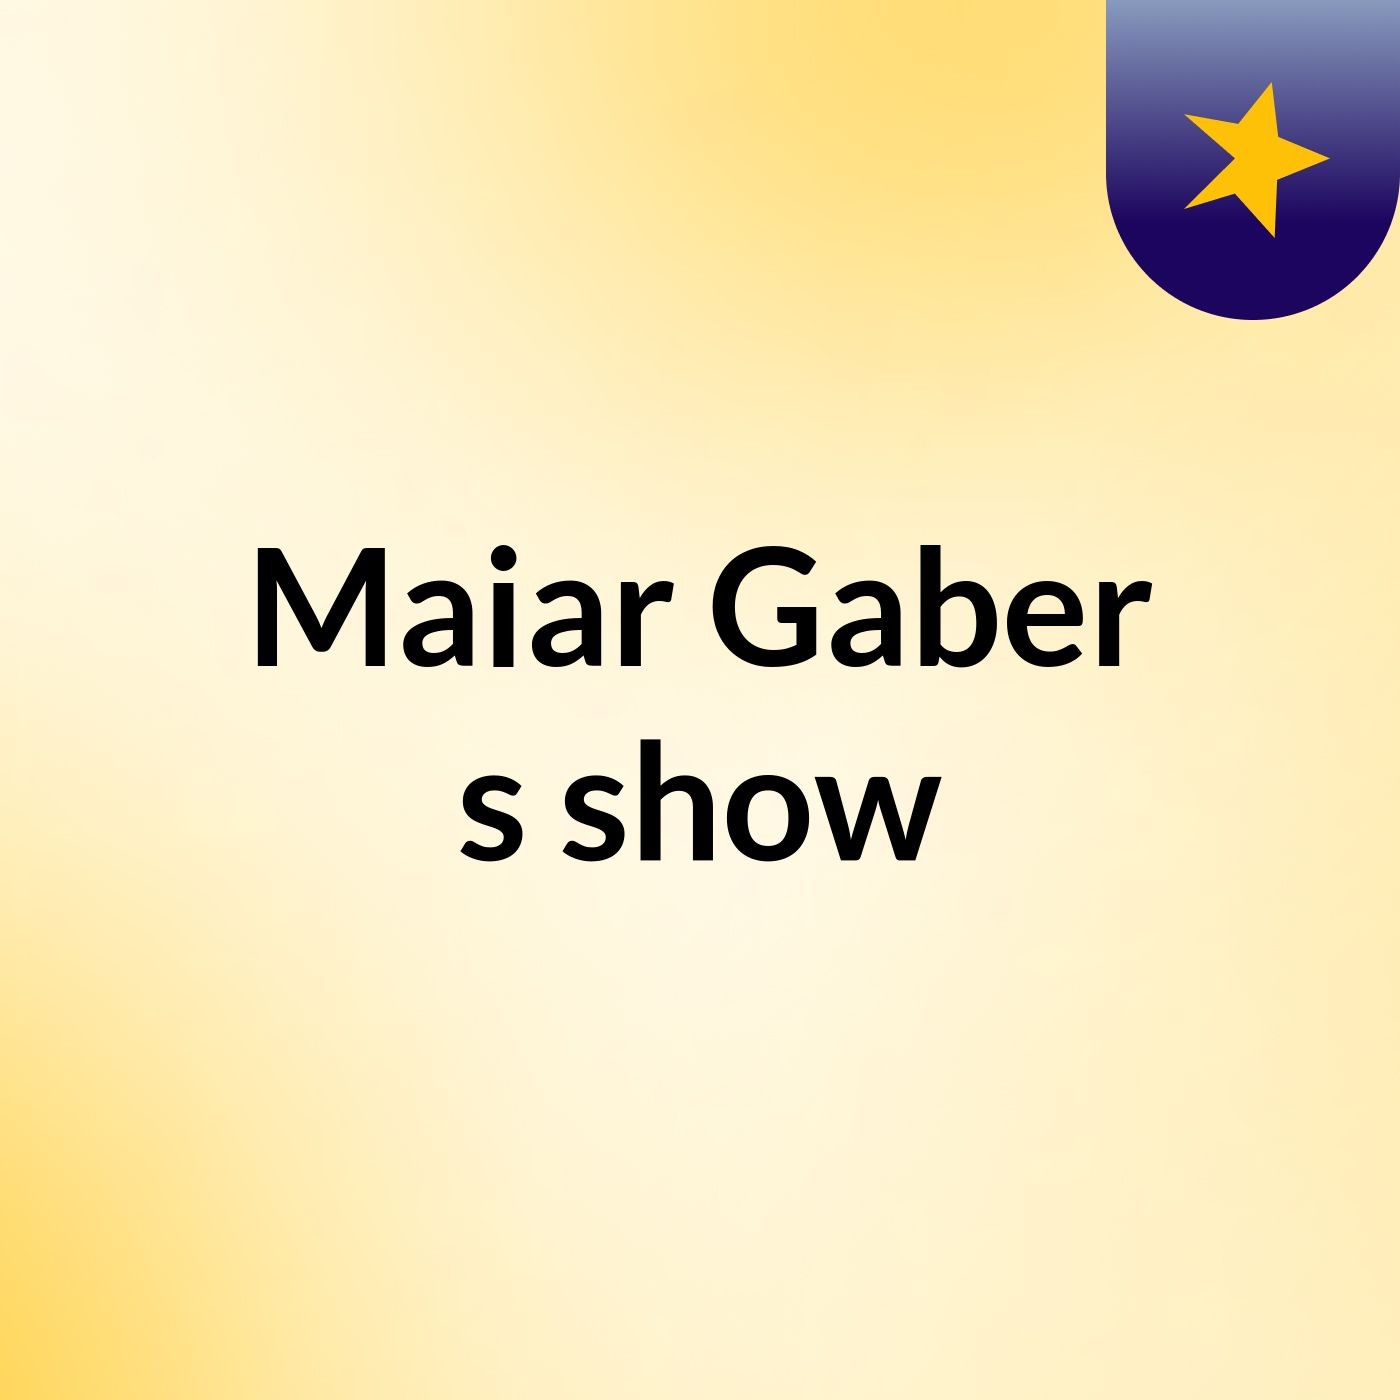 Maiar Gaber's show